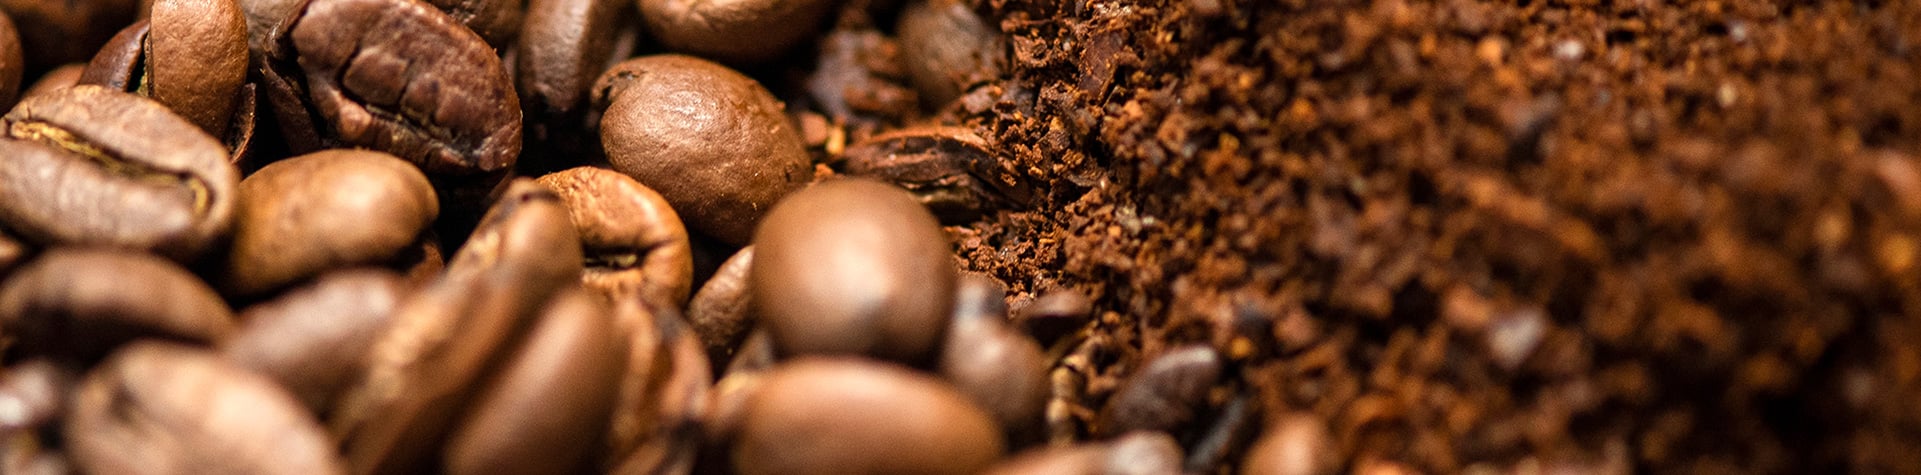 Beneficios café descafeinado grano molido